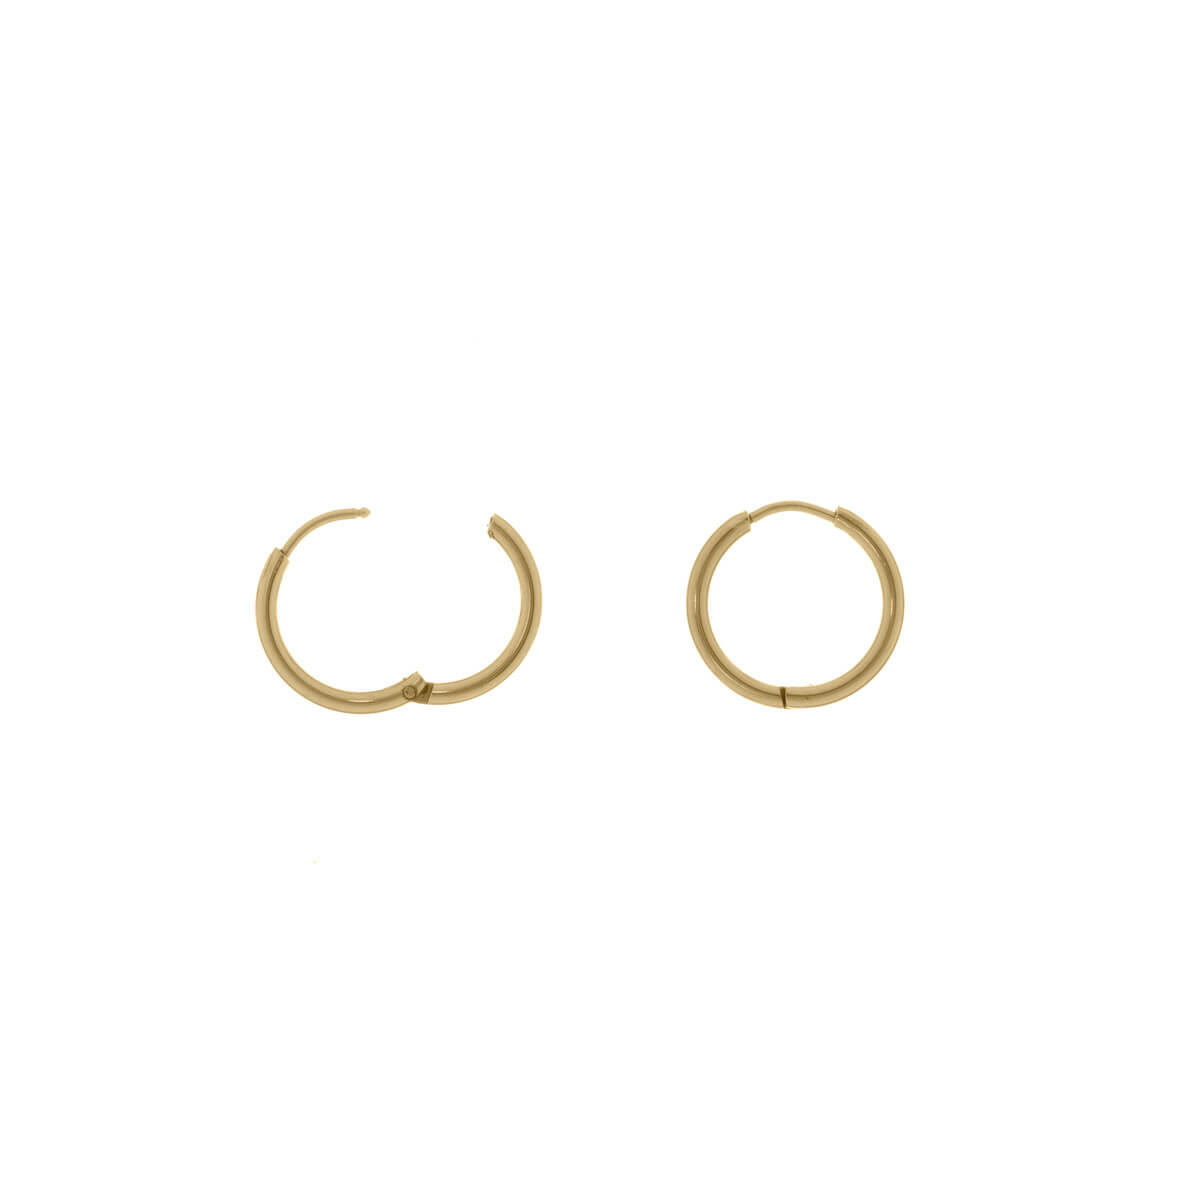 Steel ring earrings 14mm